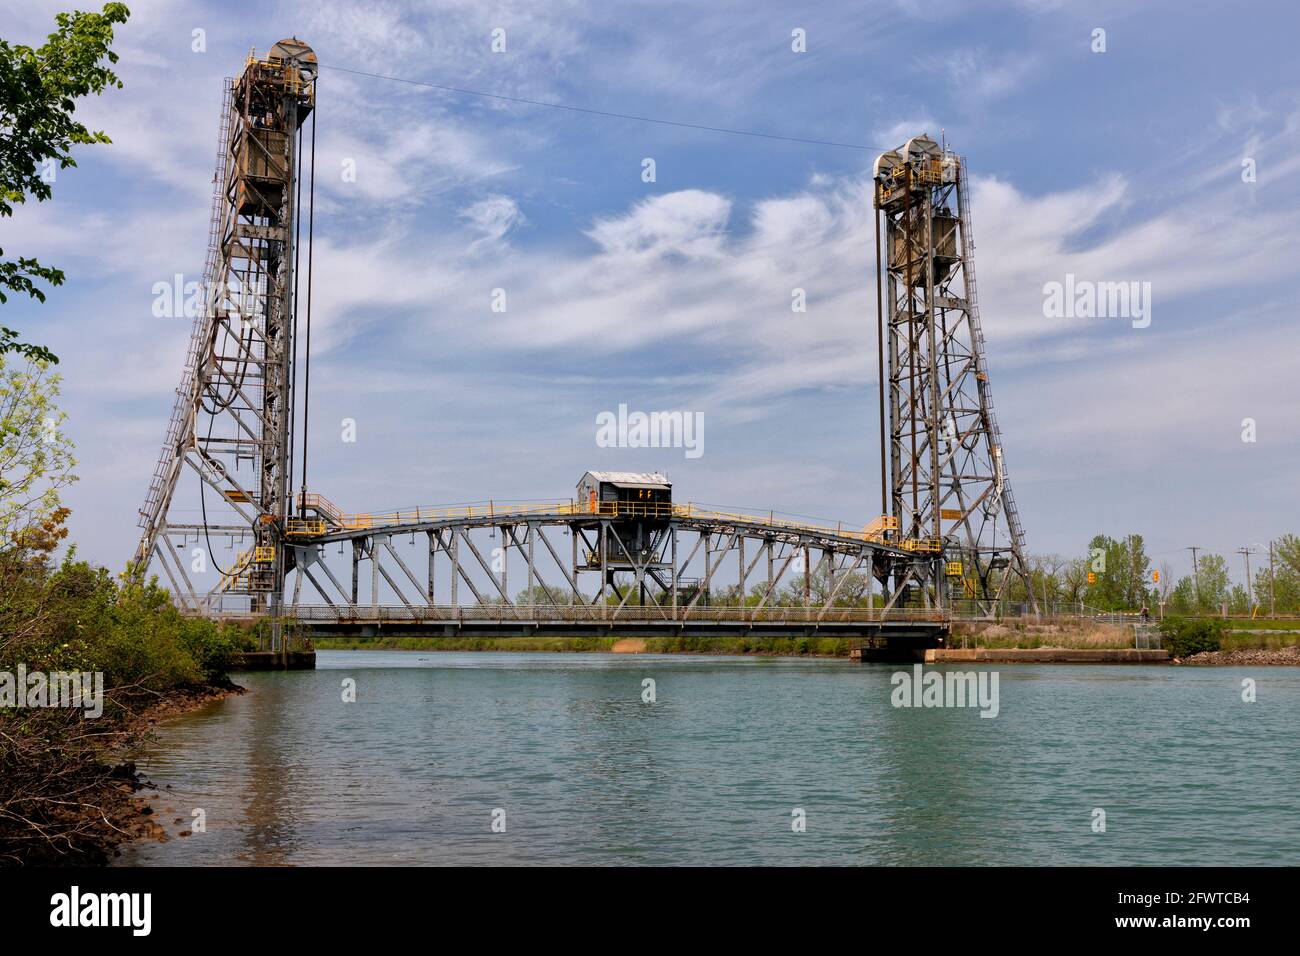 Pont 5, également connu sous le nom de pont Glendale, pont élévateur vertical le canal Welland à St. Catharines (Ontario) Canada. Banque D'Images